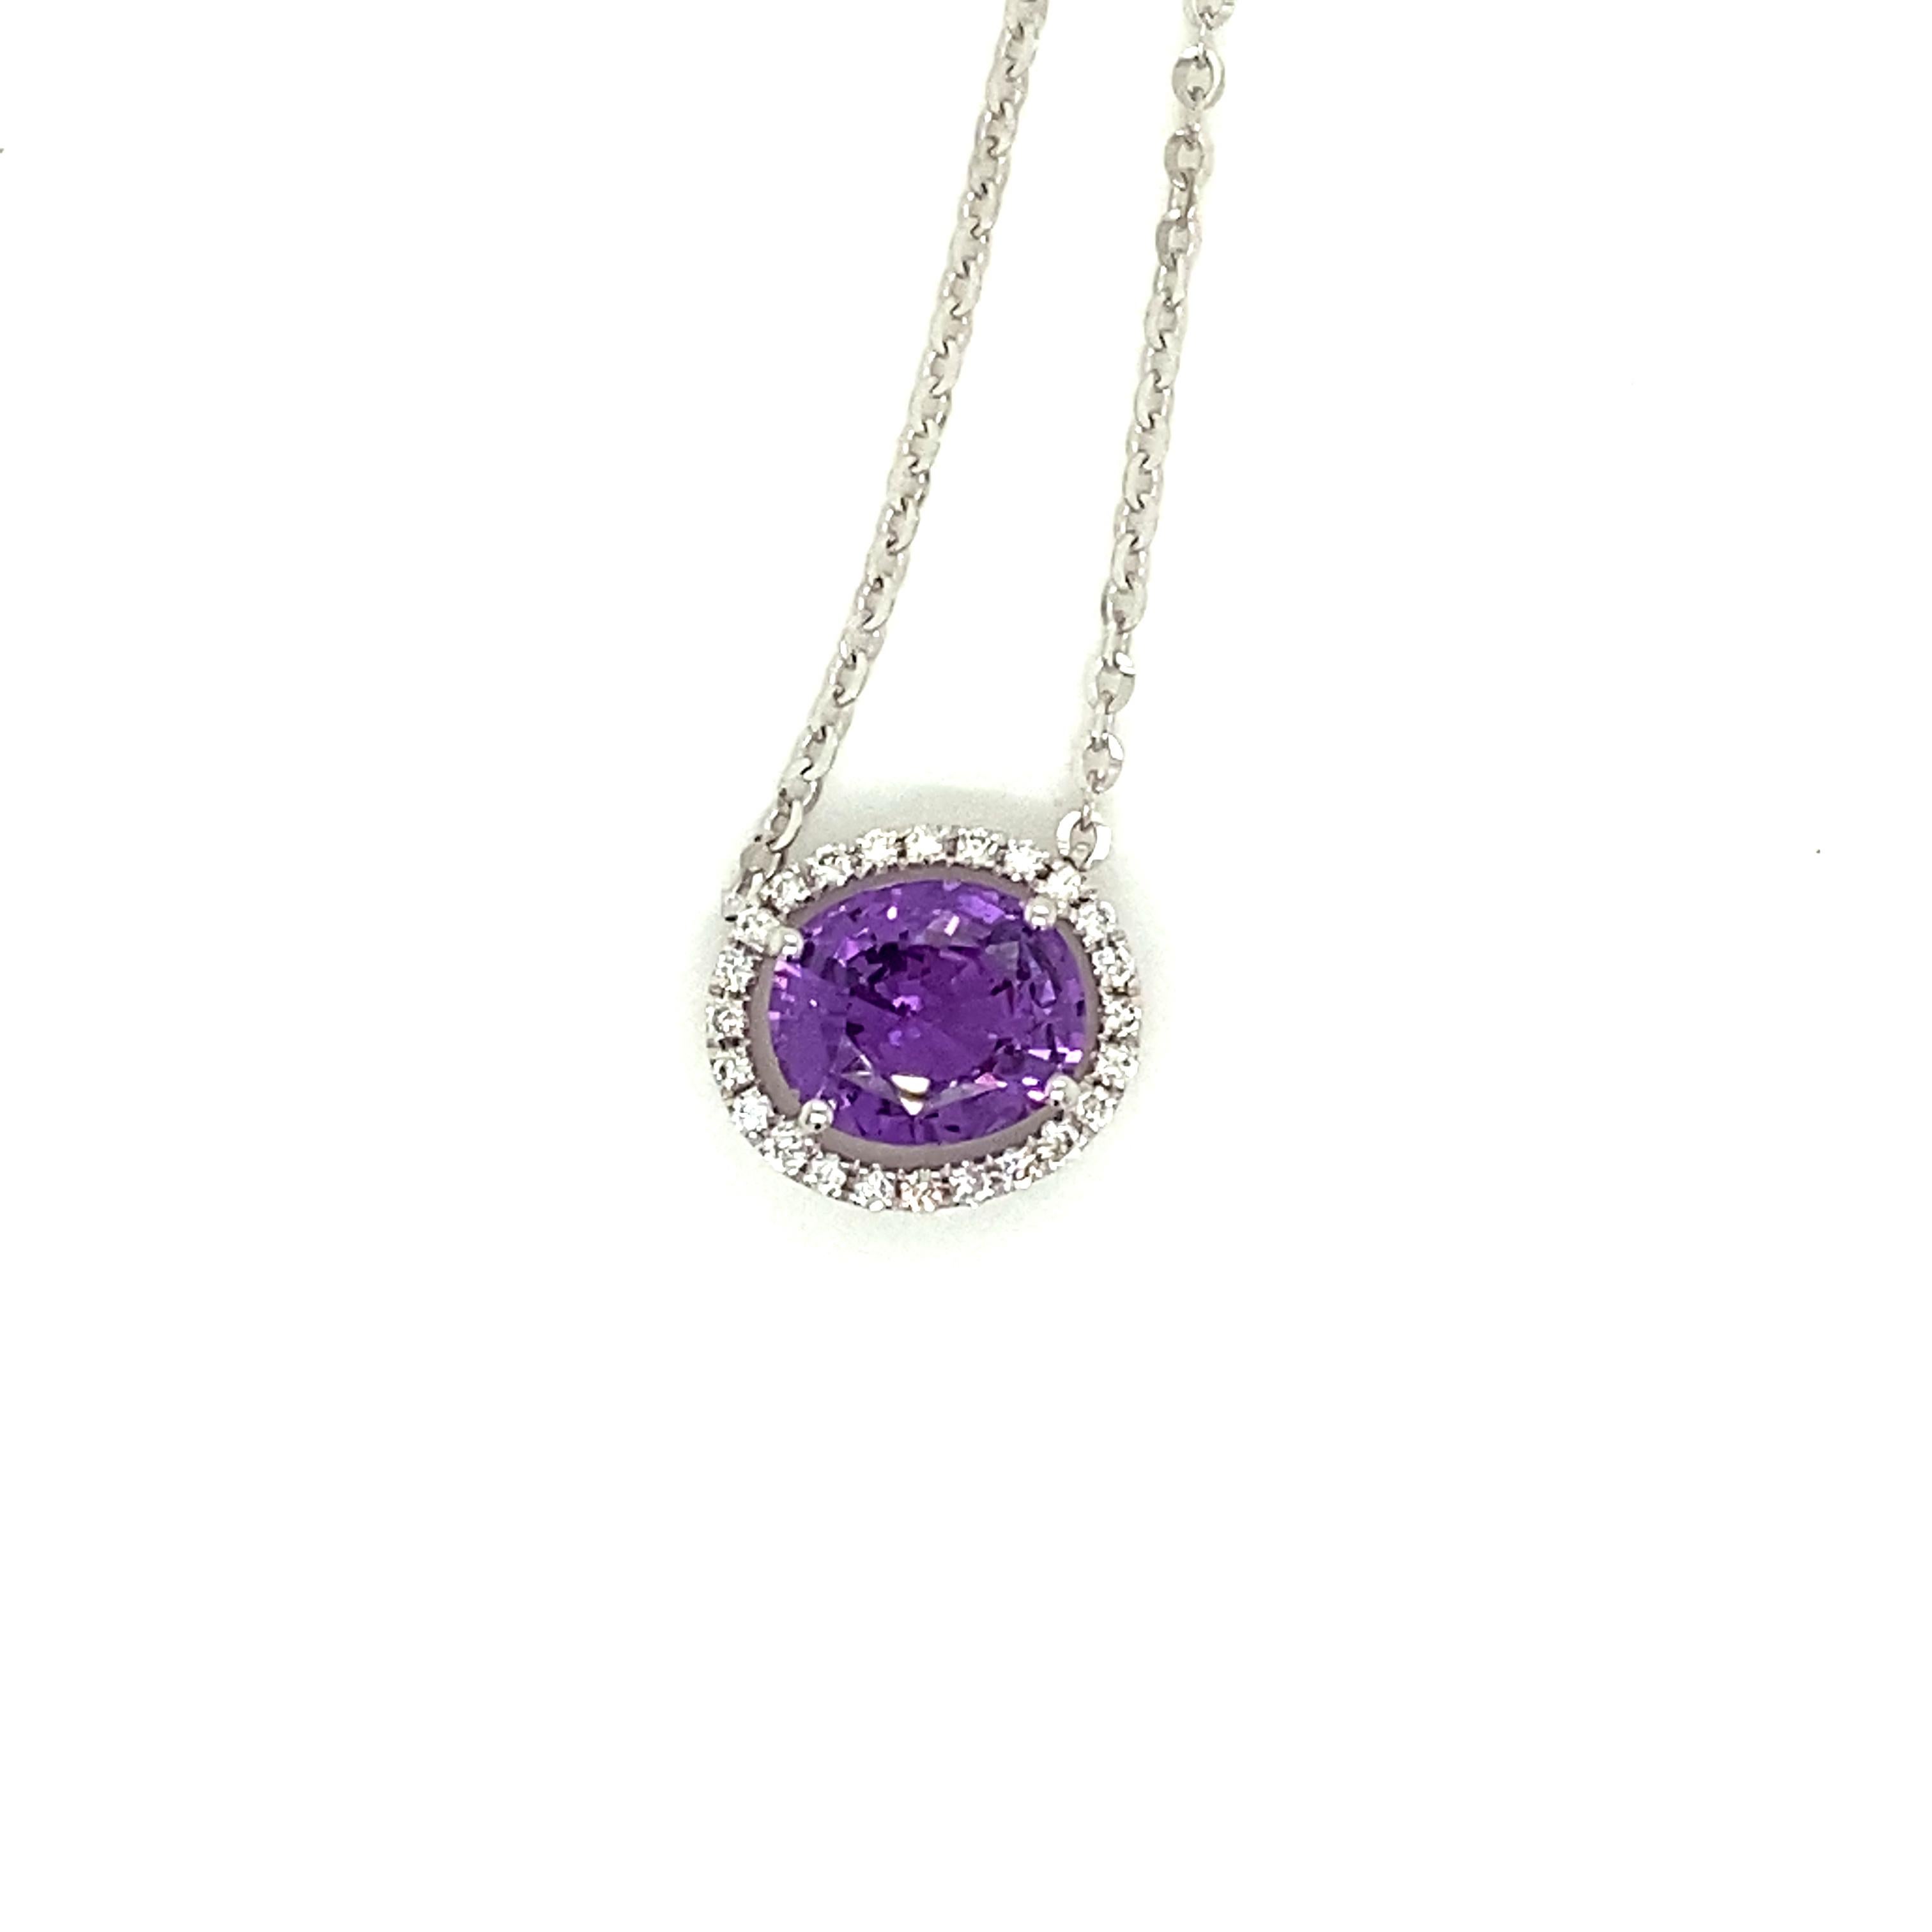 Collier à pendentif en saphir violet et diamant blanc de 2,44 carats de taille ovale :

Ce magnifique collier pendentif est orné au centre d'un saphir violet de taille ovale de 2,44 carats entouré d'un halo de diamants blancs de taille ronde et